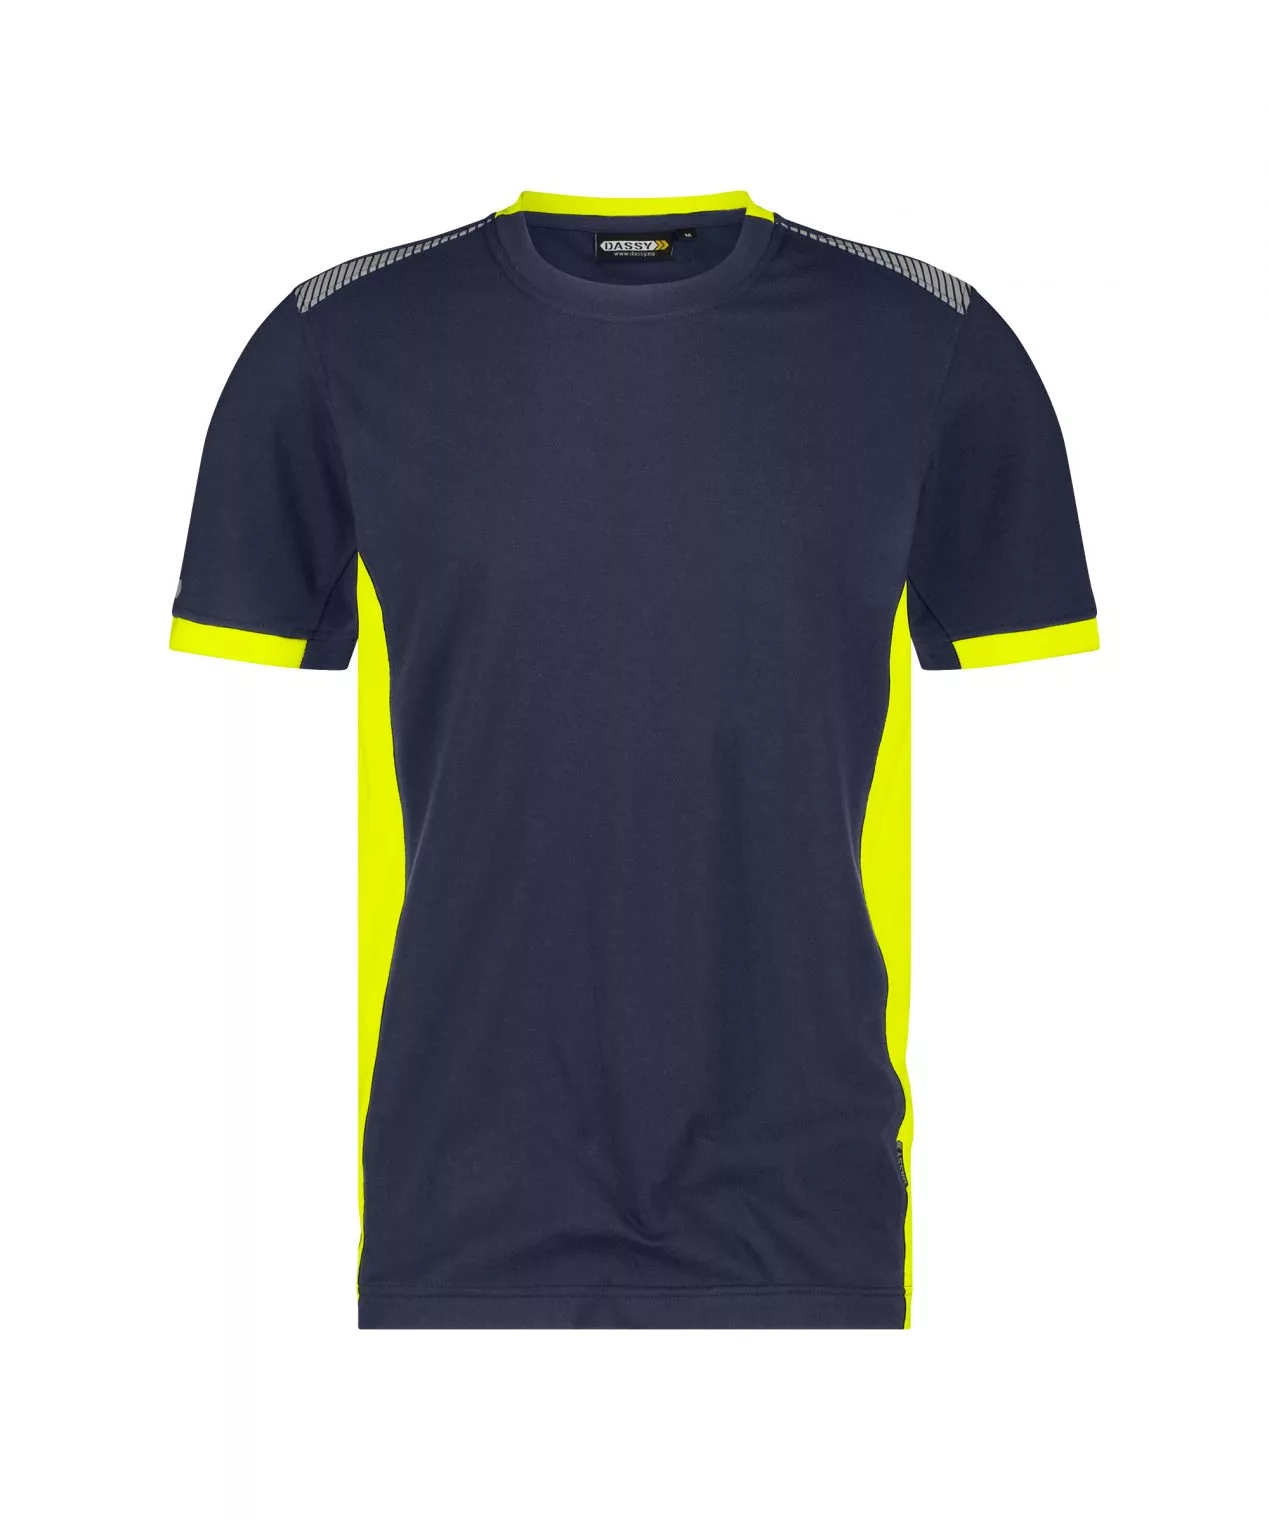 Dassy® Tampico (710057) T-Shirt Nachtblau/Neongelb